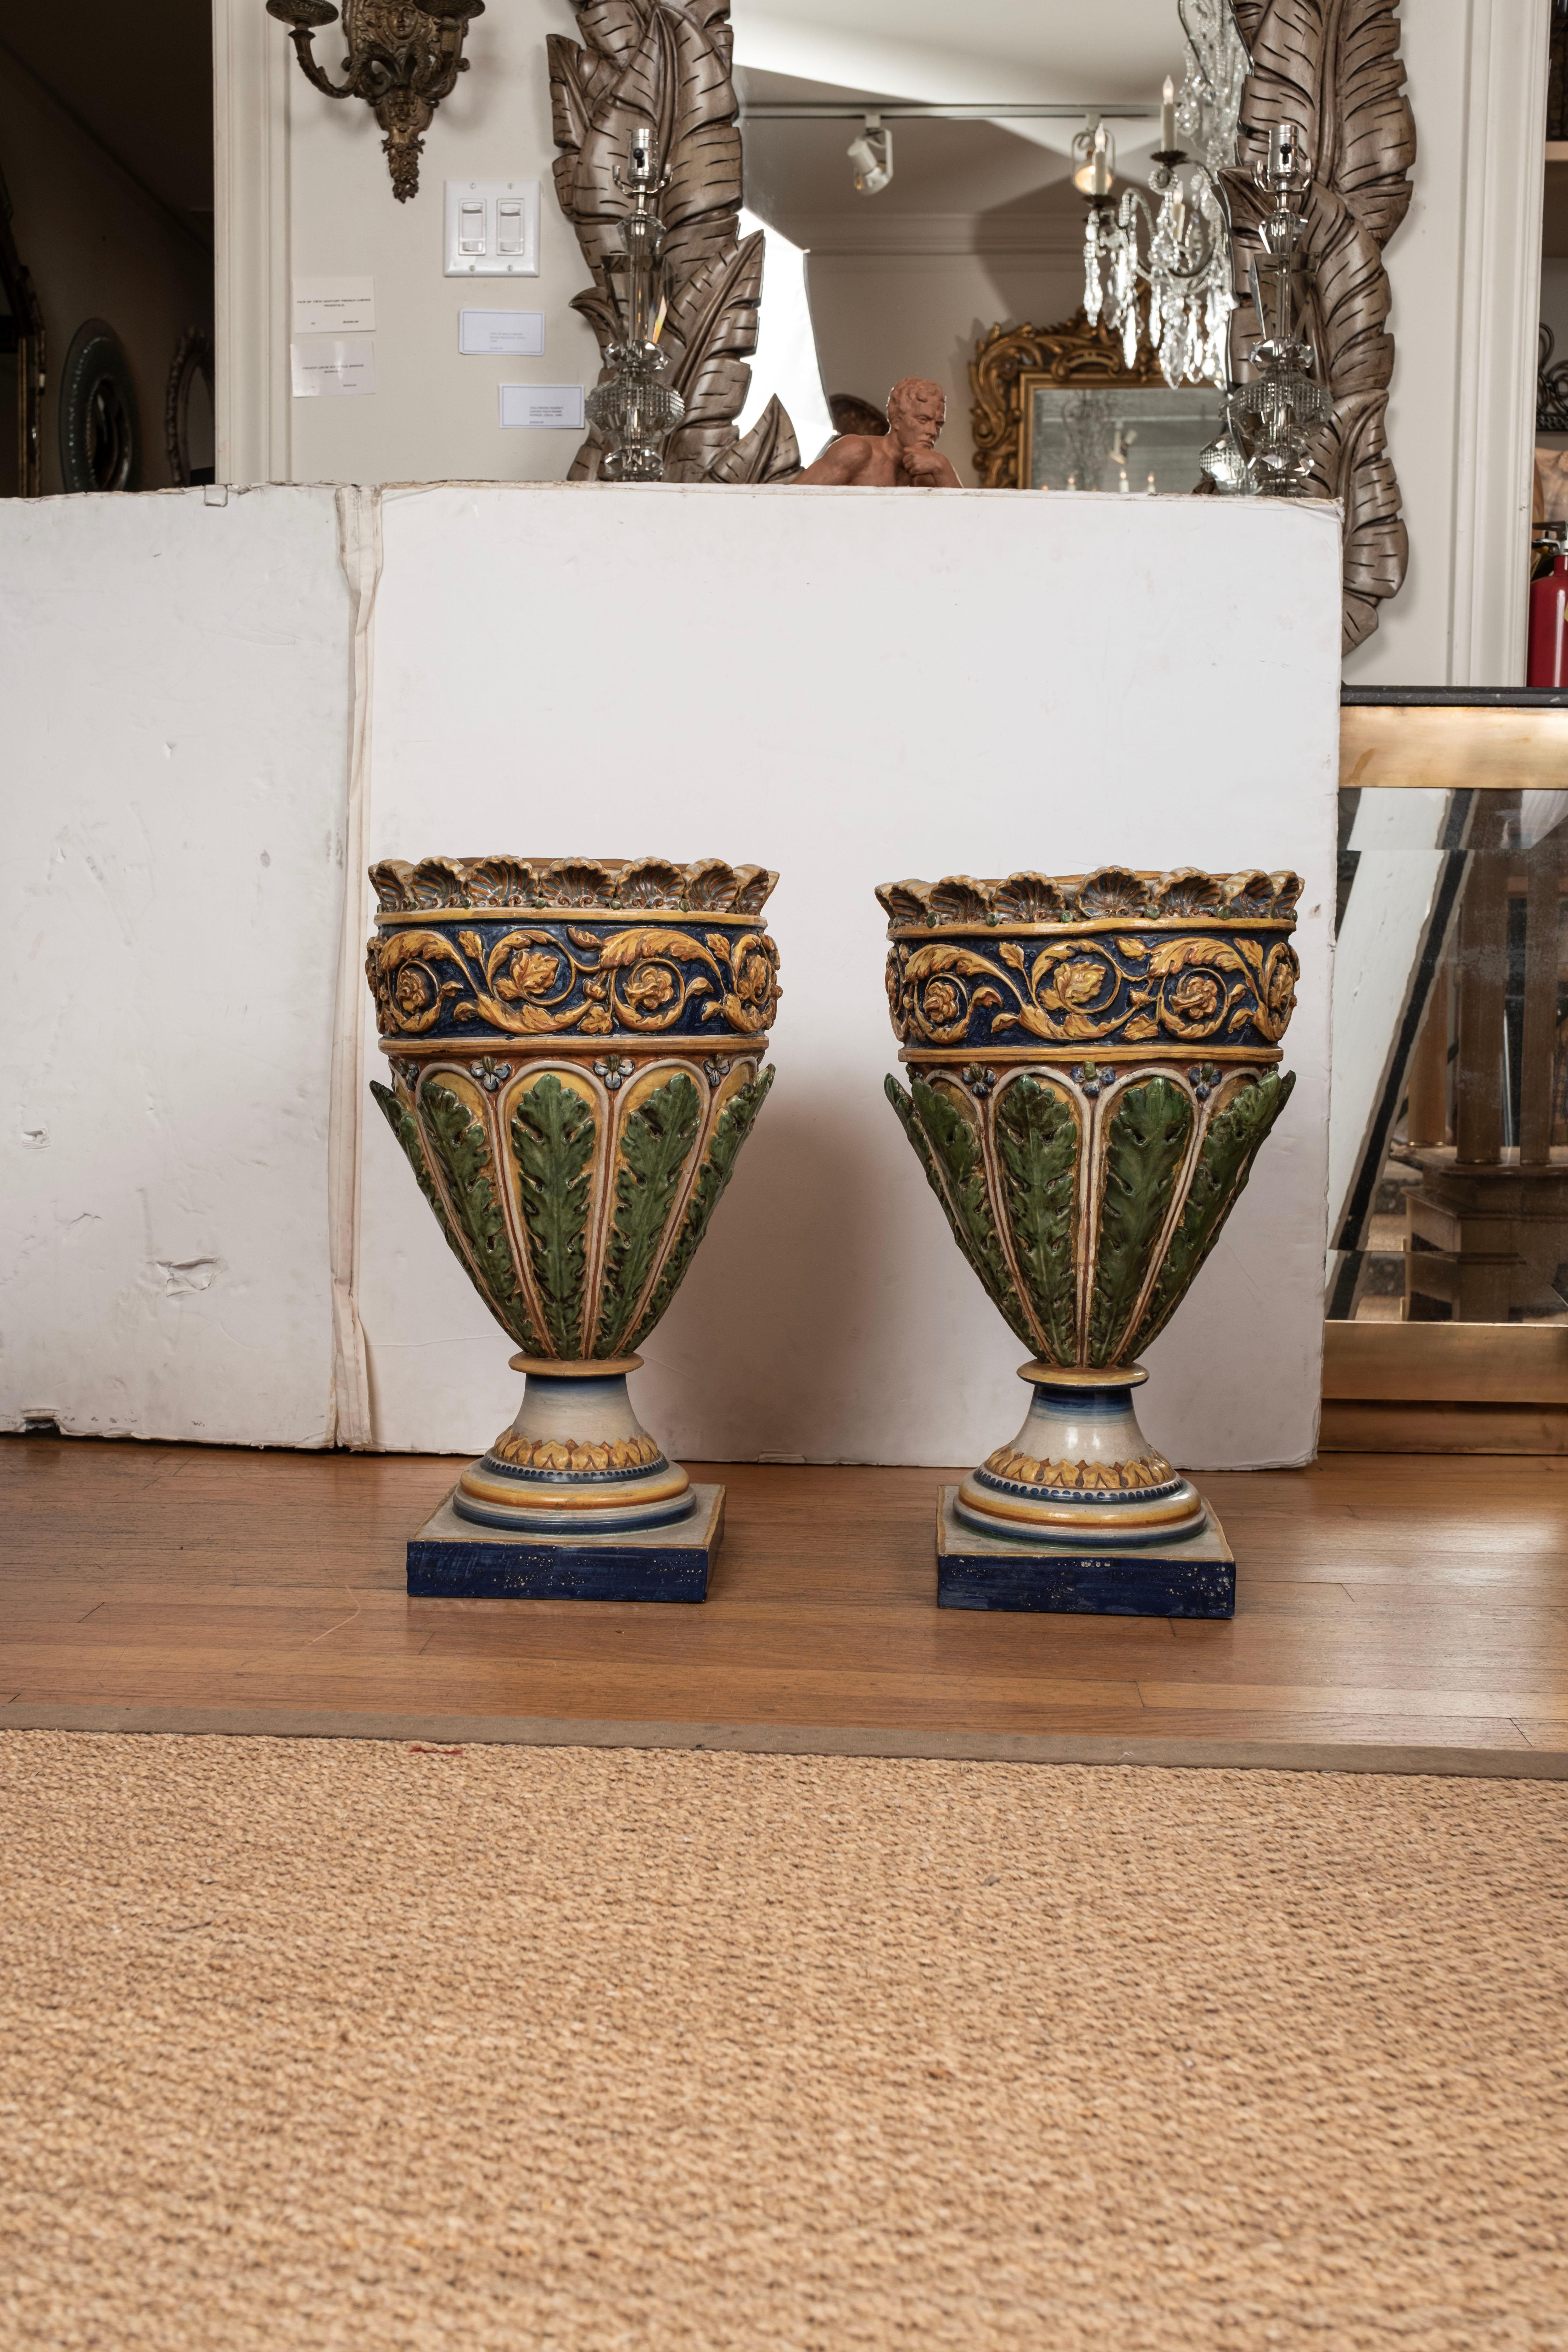 Paar italienische glasierte Terrakotta-Urnen oder Pflanzgefäße.
Dieses atemberaubende Paar italienischer glasierter Terrakotta-Urnen, Pflanzgefäße oder Jardinieres stammt von der Amalfiküste und zeigt schöne Blau-, Gold-, Grün- und Cremetöne mit